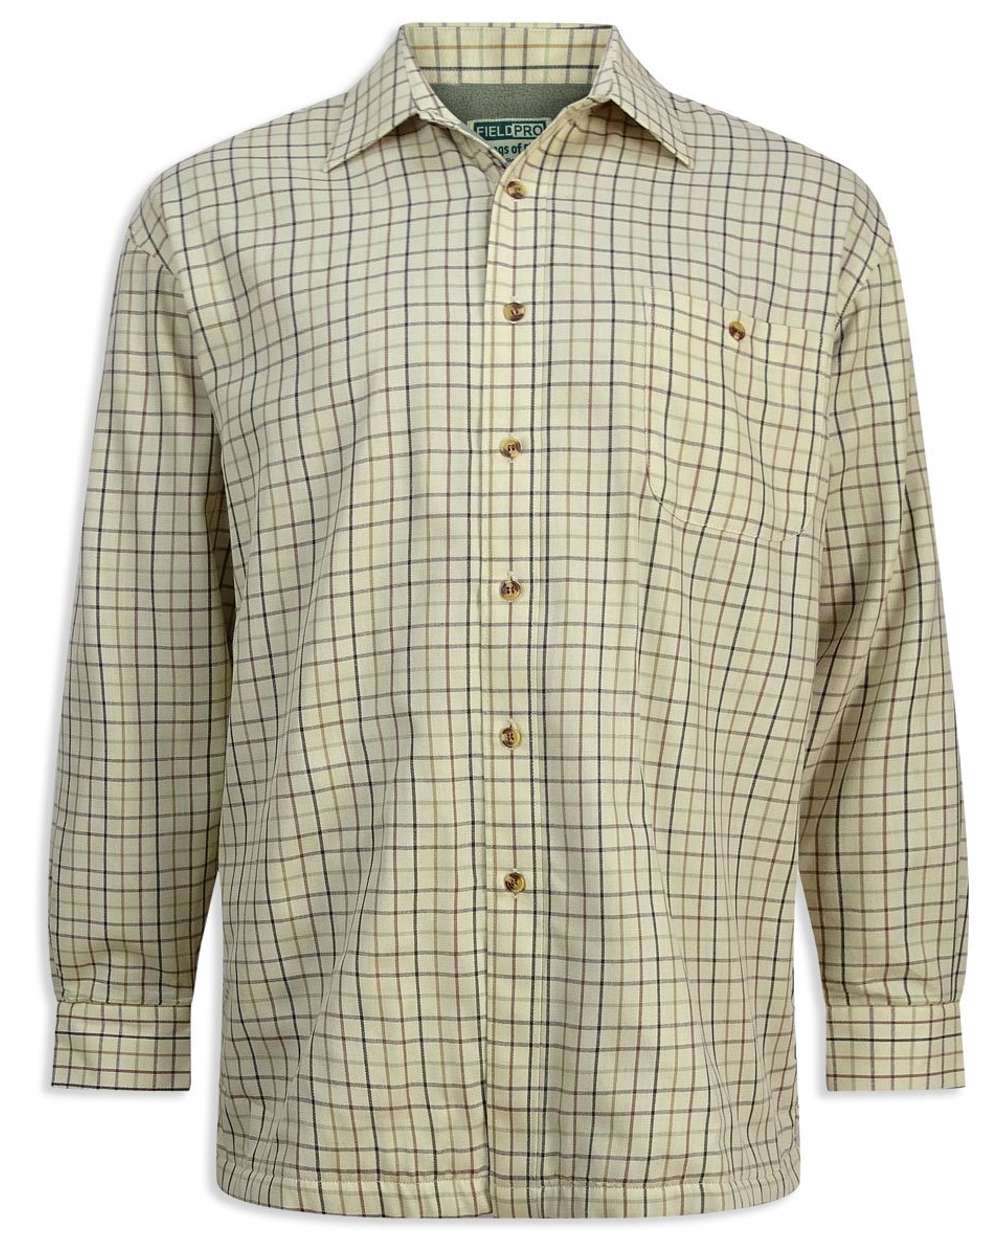 Hoggs of Fife Birch Micro Fleece Lined Shirt